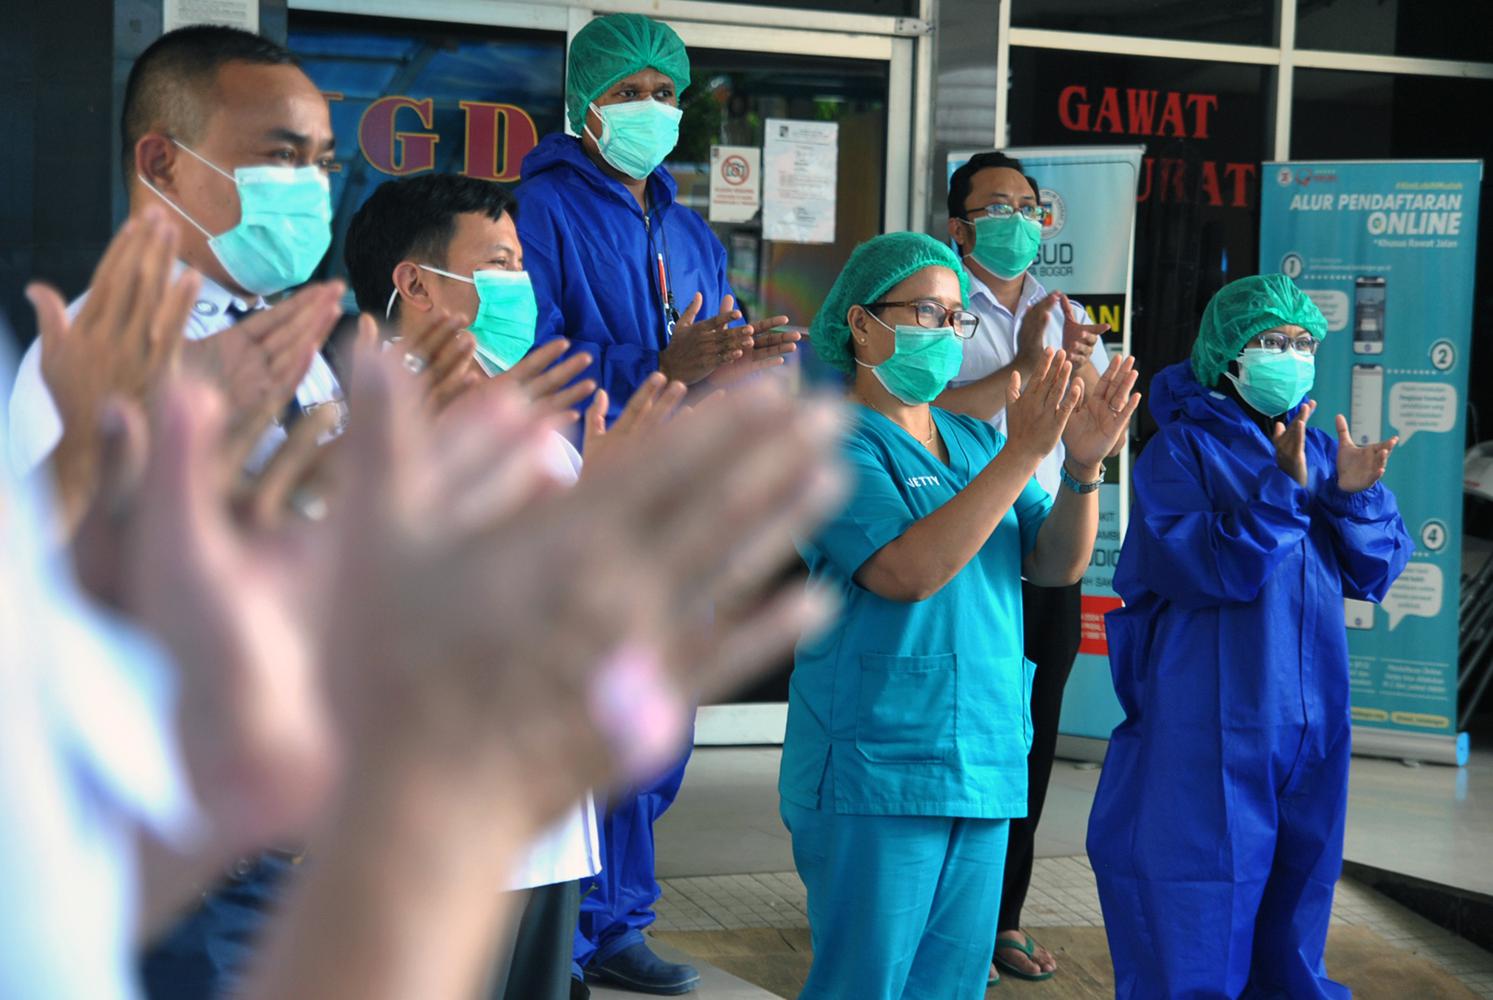 Sejumlah petugas dan tenaga kesehatan melakukan tepuk tangan bersama selama 56 detik di RSUD Kota Bogor, Jawa Barat, Kamis (12/11/2020). Kegiatan tepuk tangan bersama dan pembagian masker berbahan kain tersebut selain dalam rangka memperingati Hari Kesehatan Nasional ke-56 sekaligus sebagai apresiasi terhadap perjuangan tenaga kesehatan dalam pencegahan dan penanganan COVID-19 serta masyarakat yang telah patuh dalam melaksanakan protokol kesehatan.